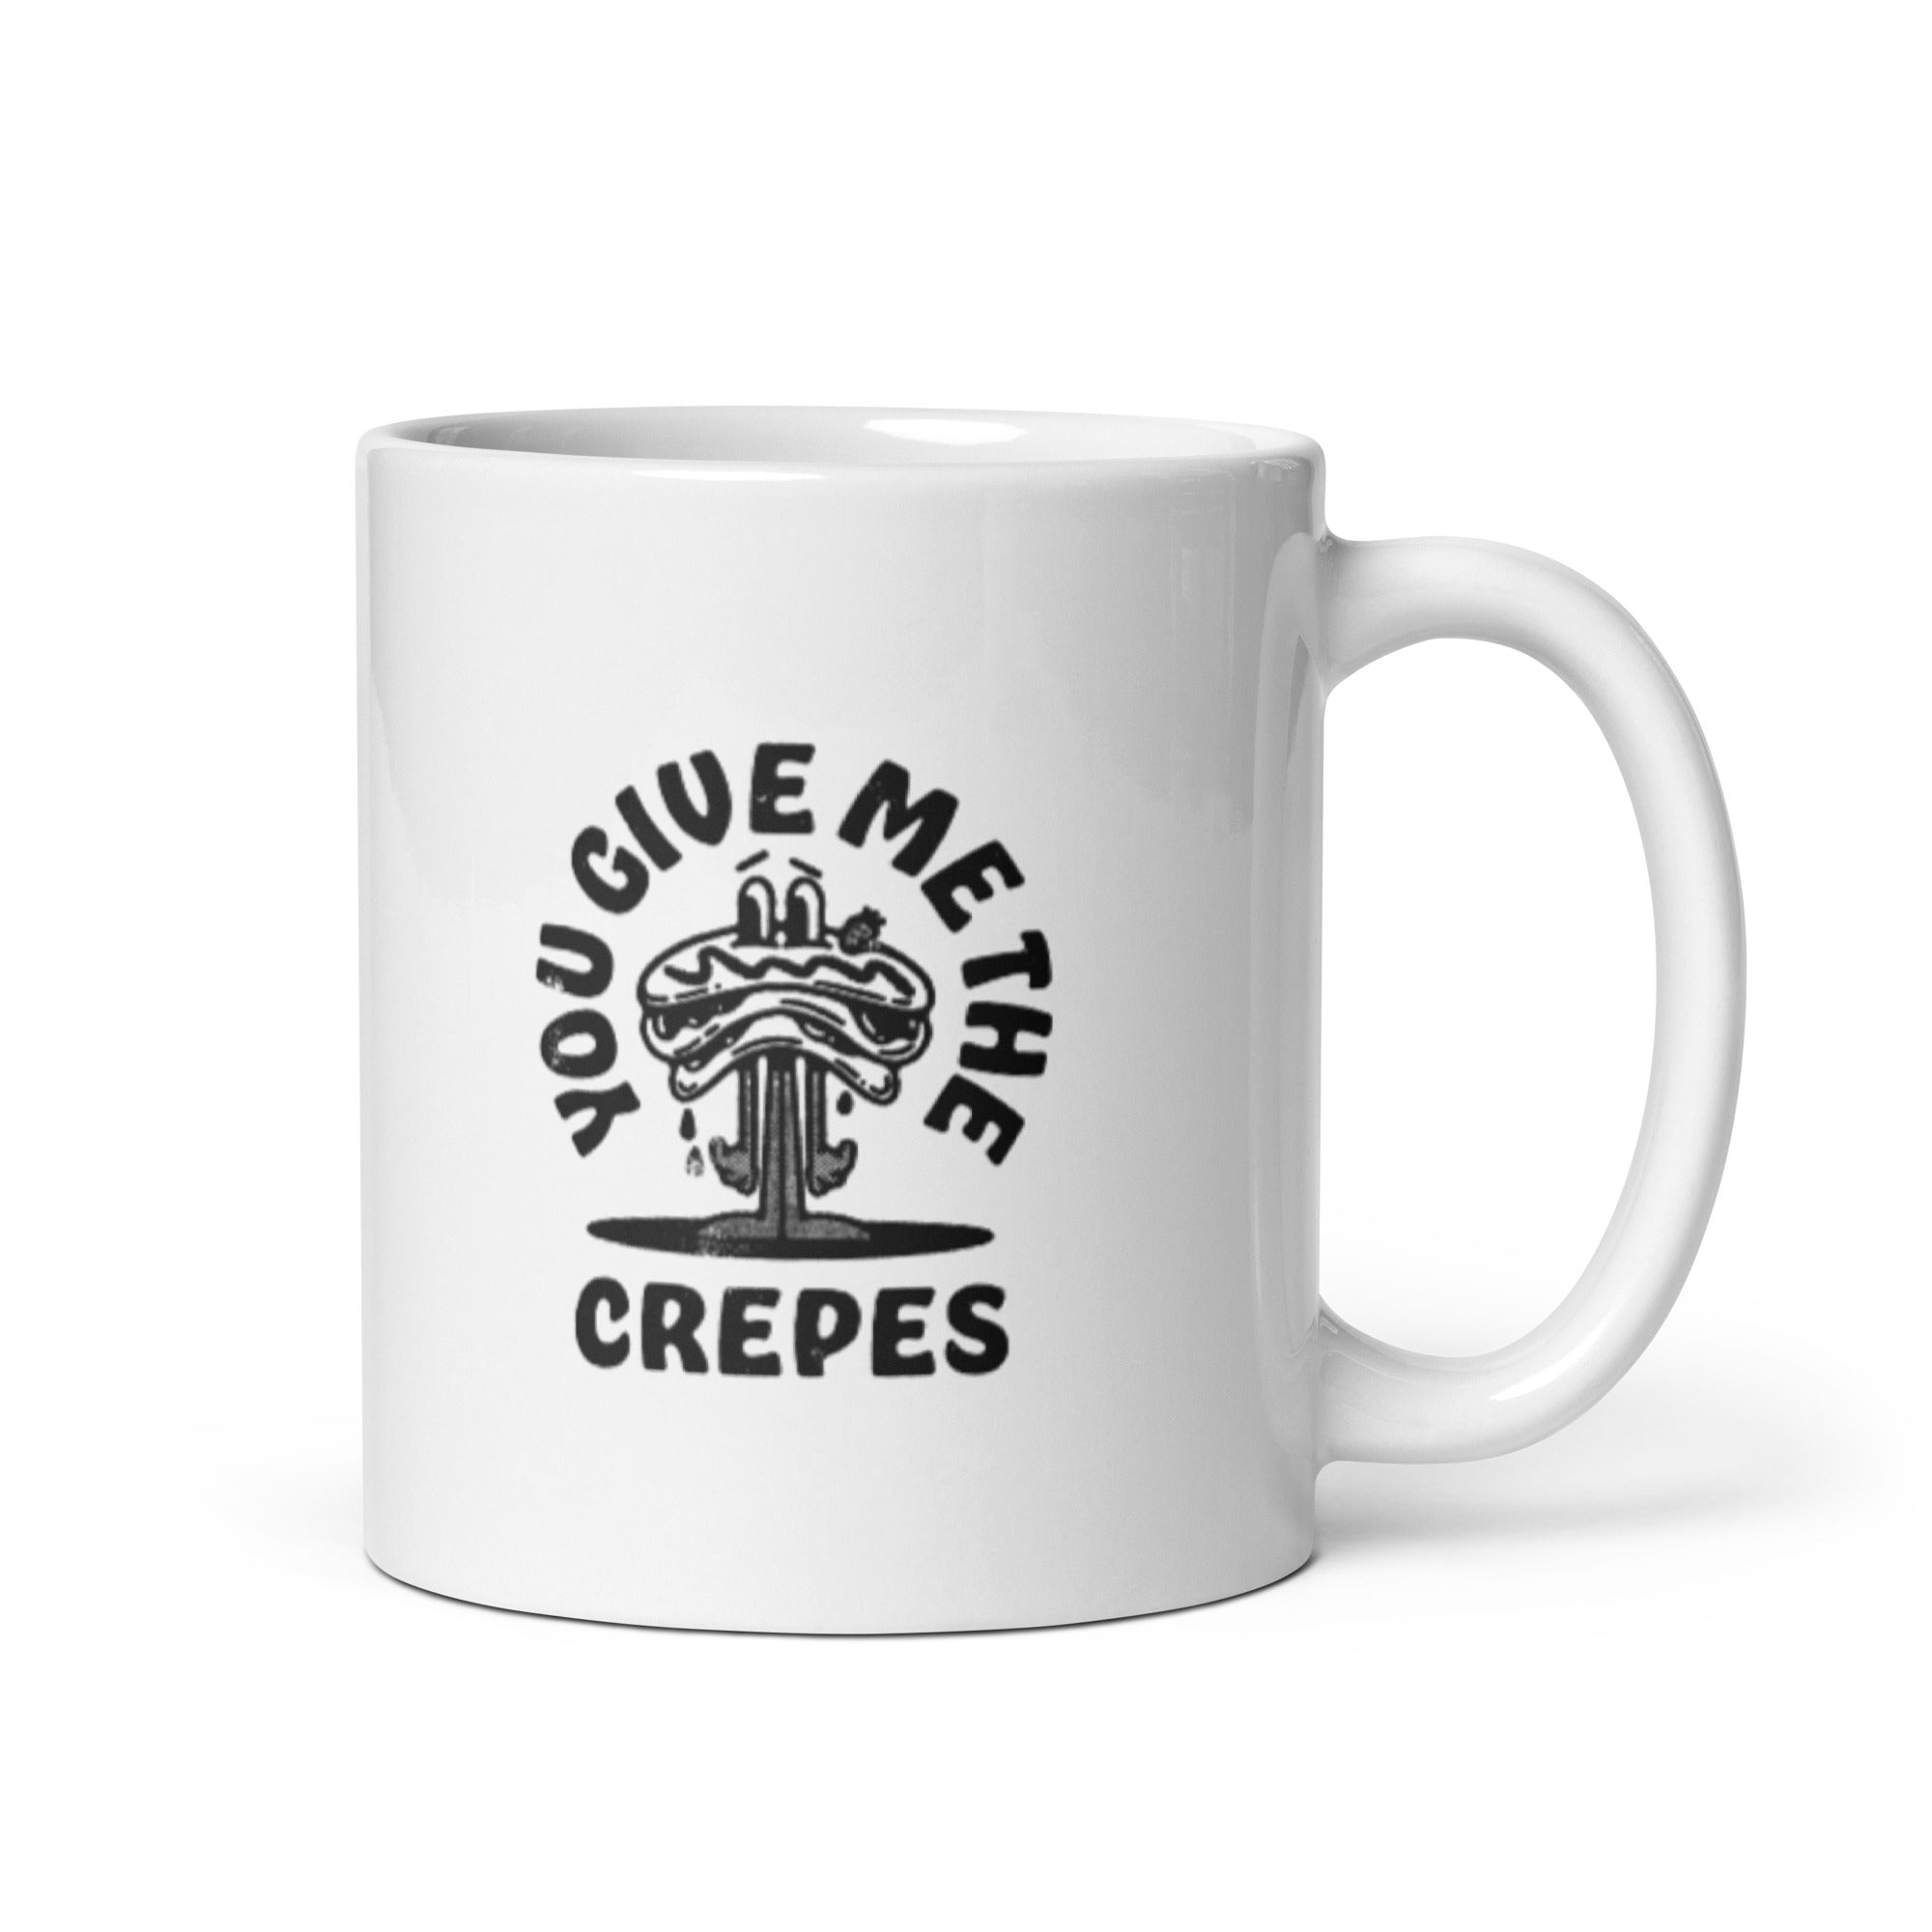 You Give Me The Crepes - White glossy mug